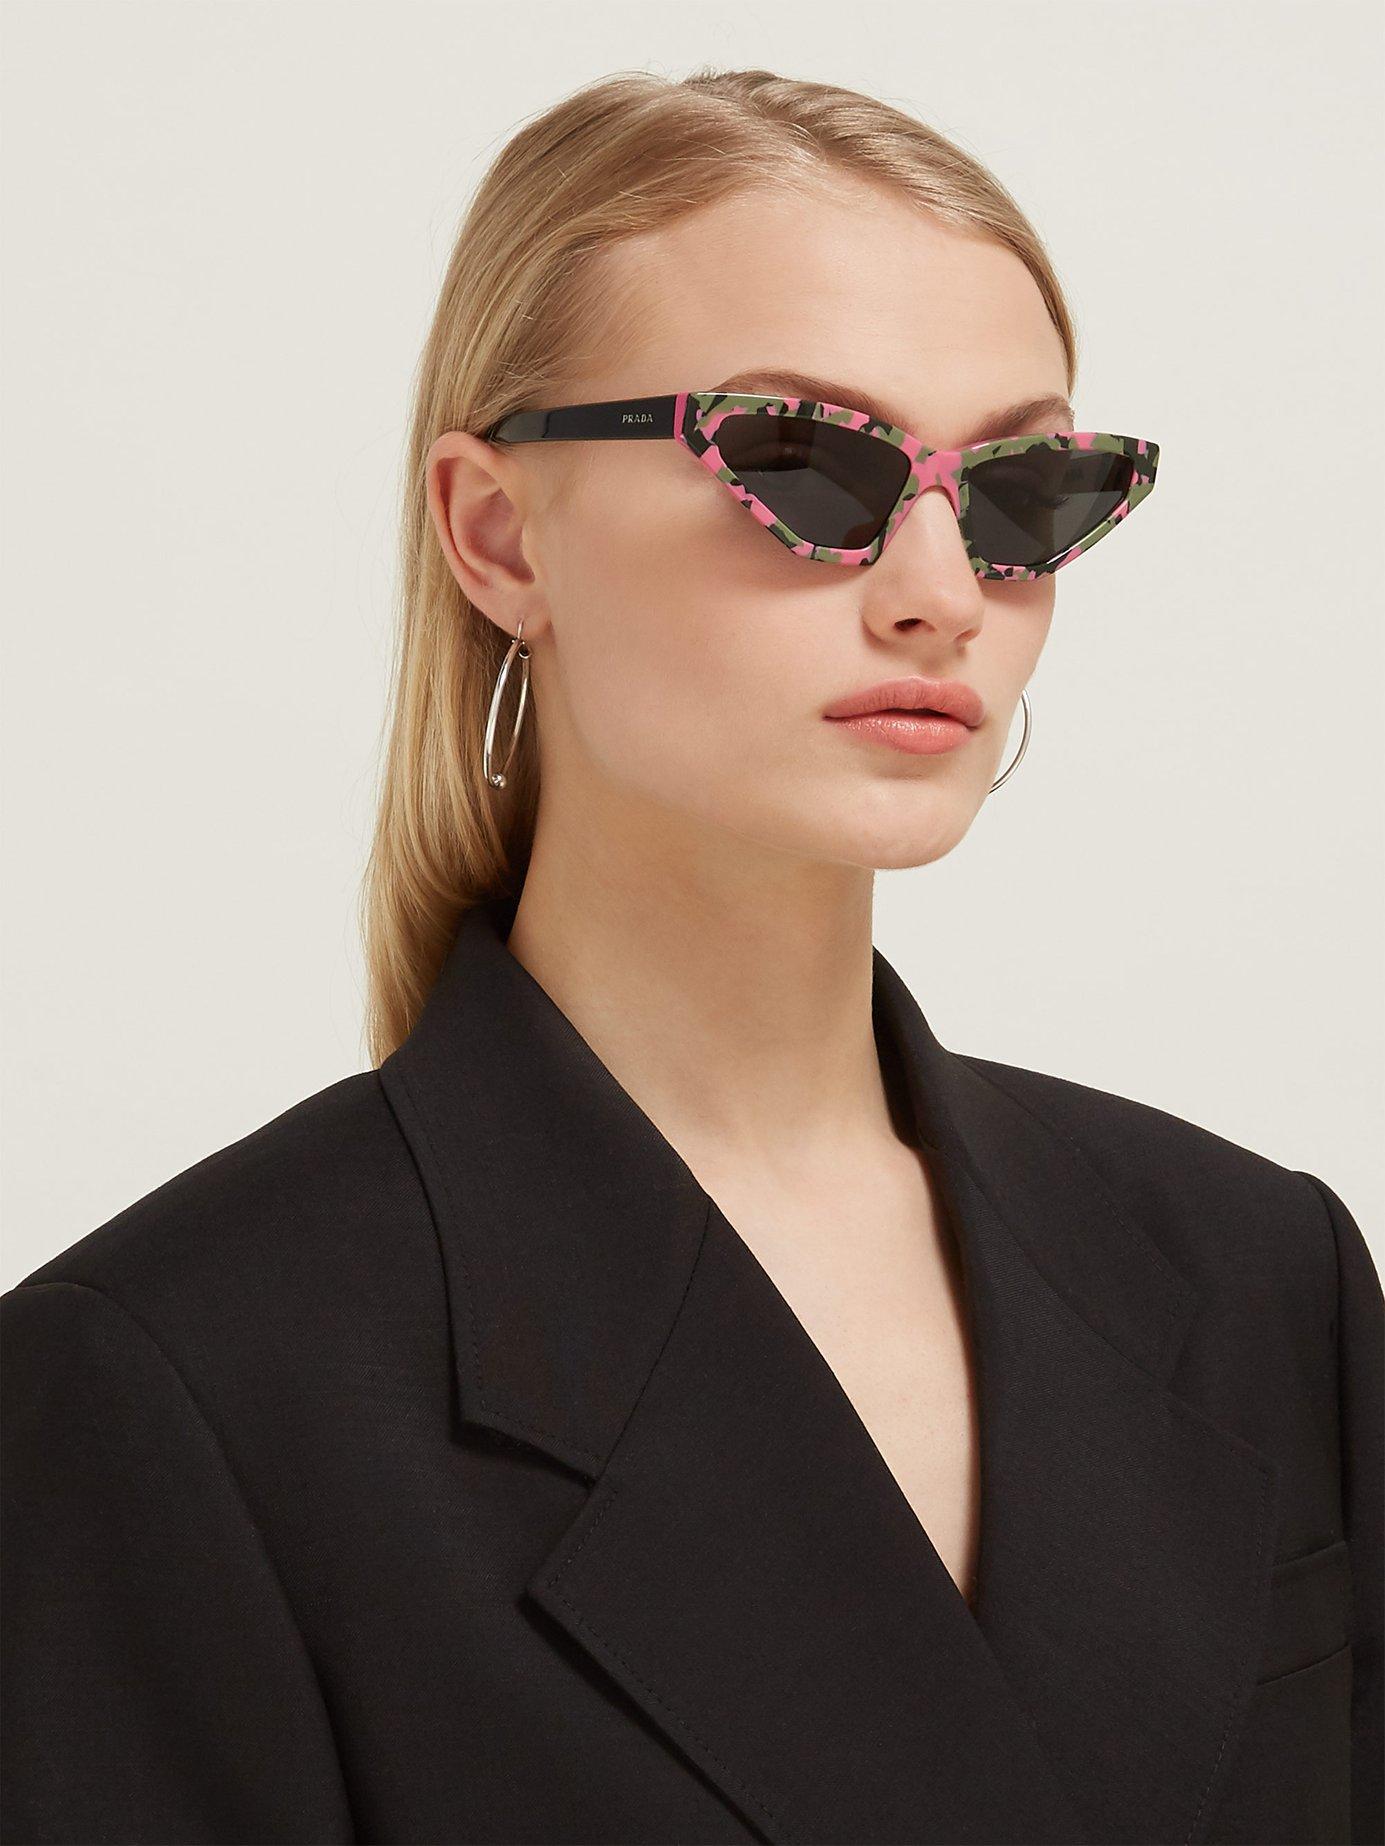 prada camo sunglasses, OFF 76%,Buy!